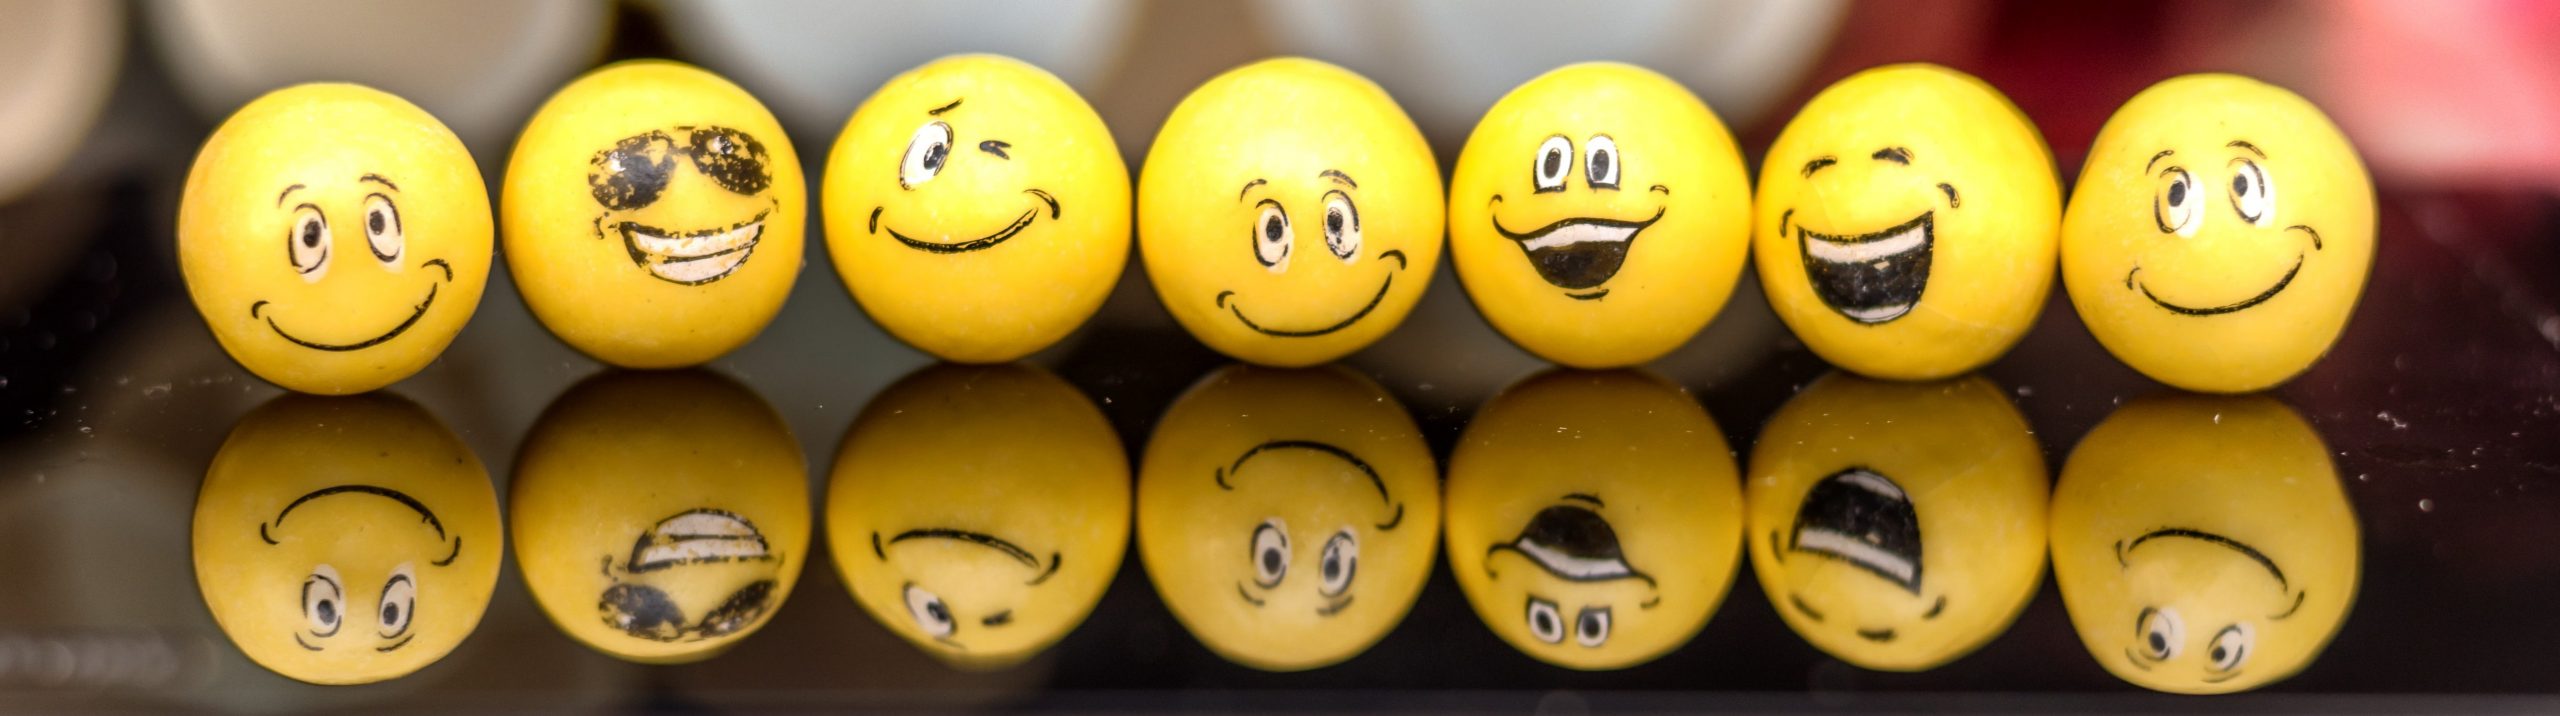 emoji ping pong balls